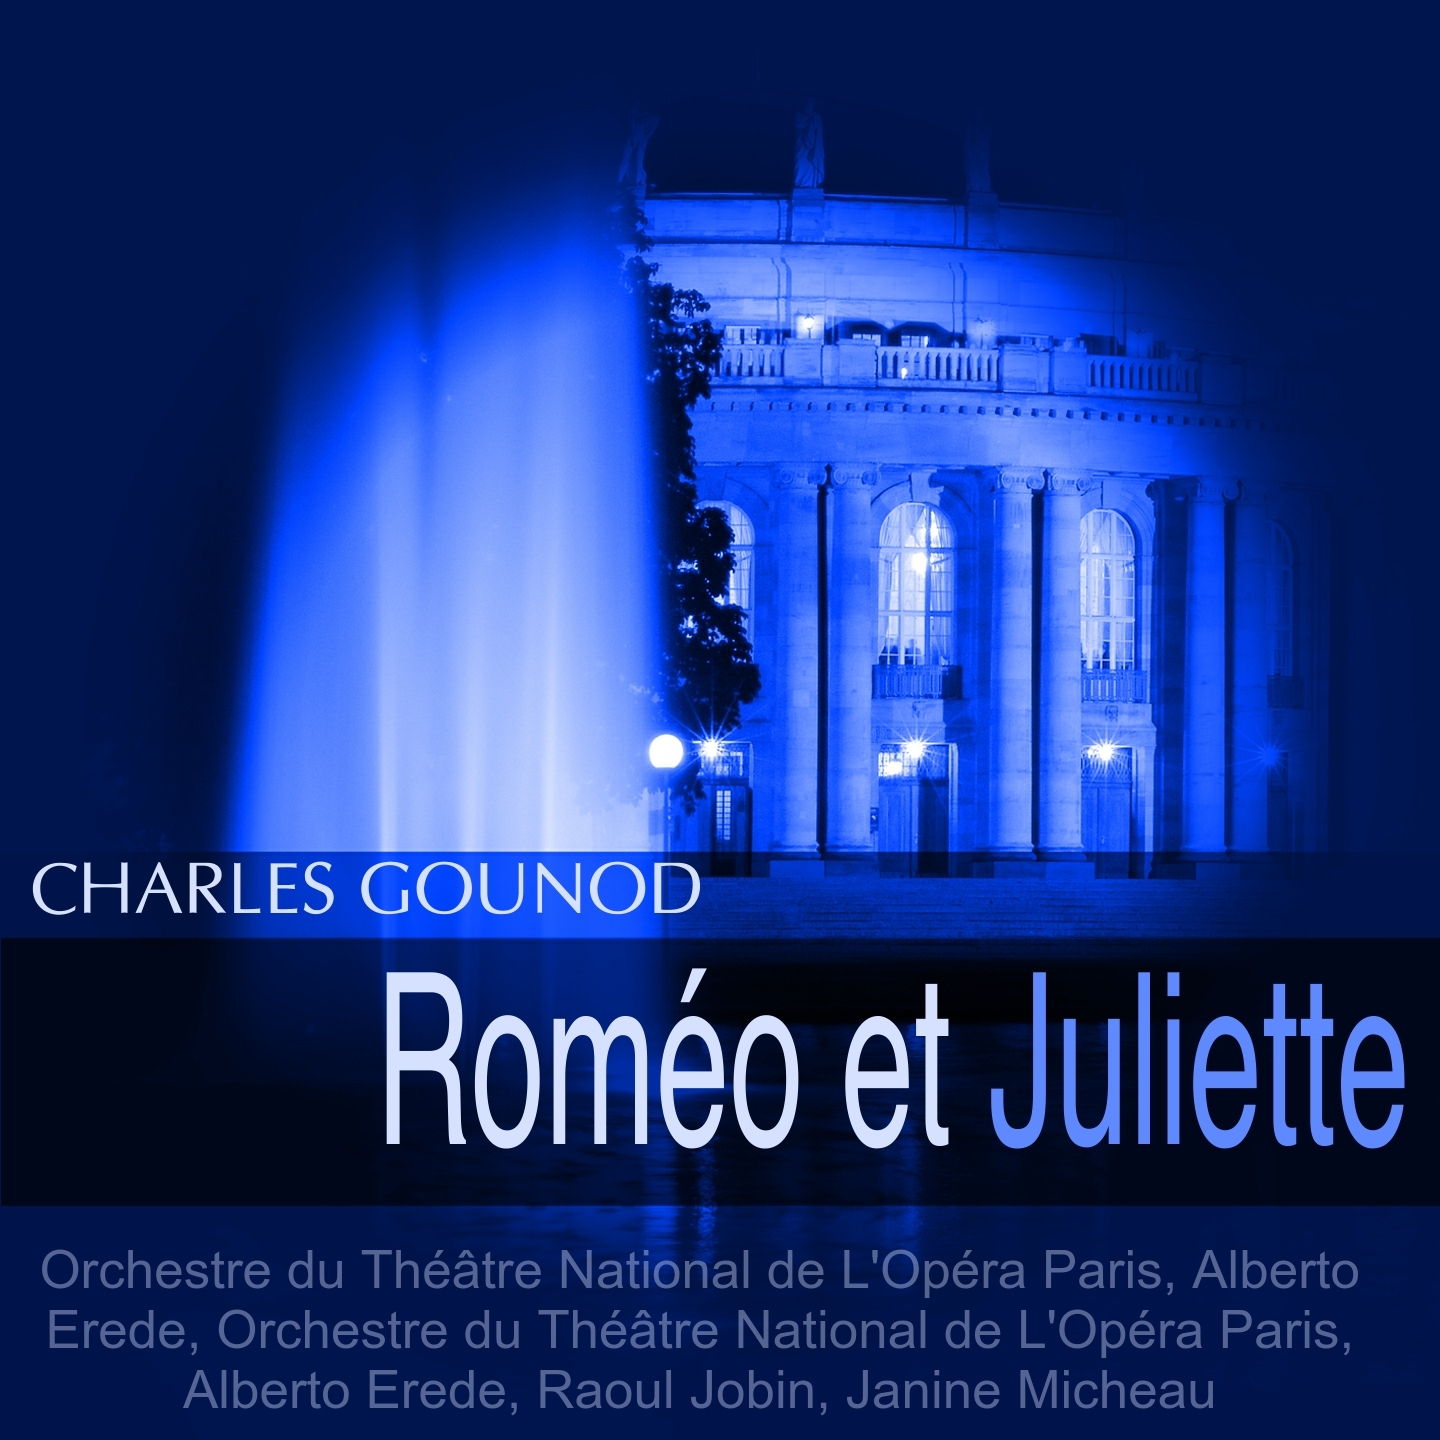 Rome o et Juliette, Act I: " Voyons, nourrice... Je veux vivre dans ce r ve" Juliette